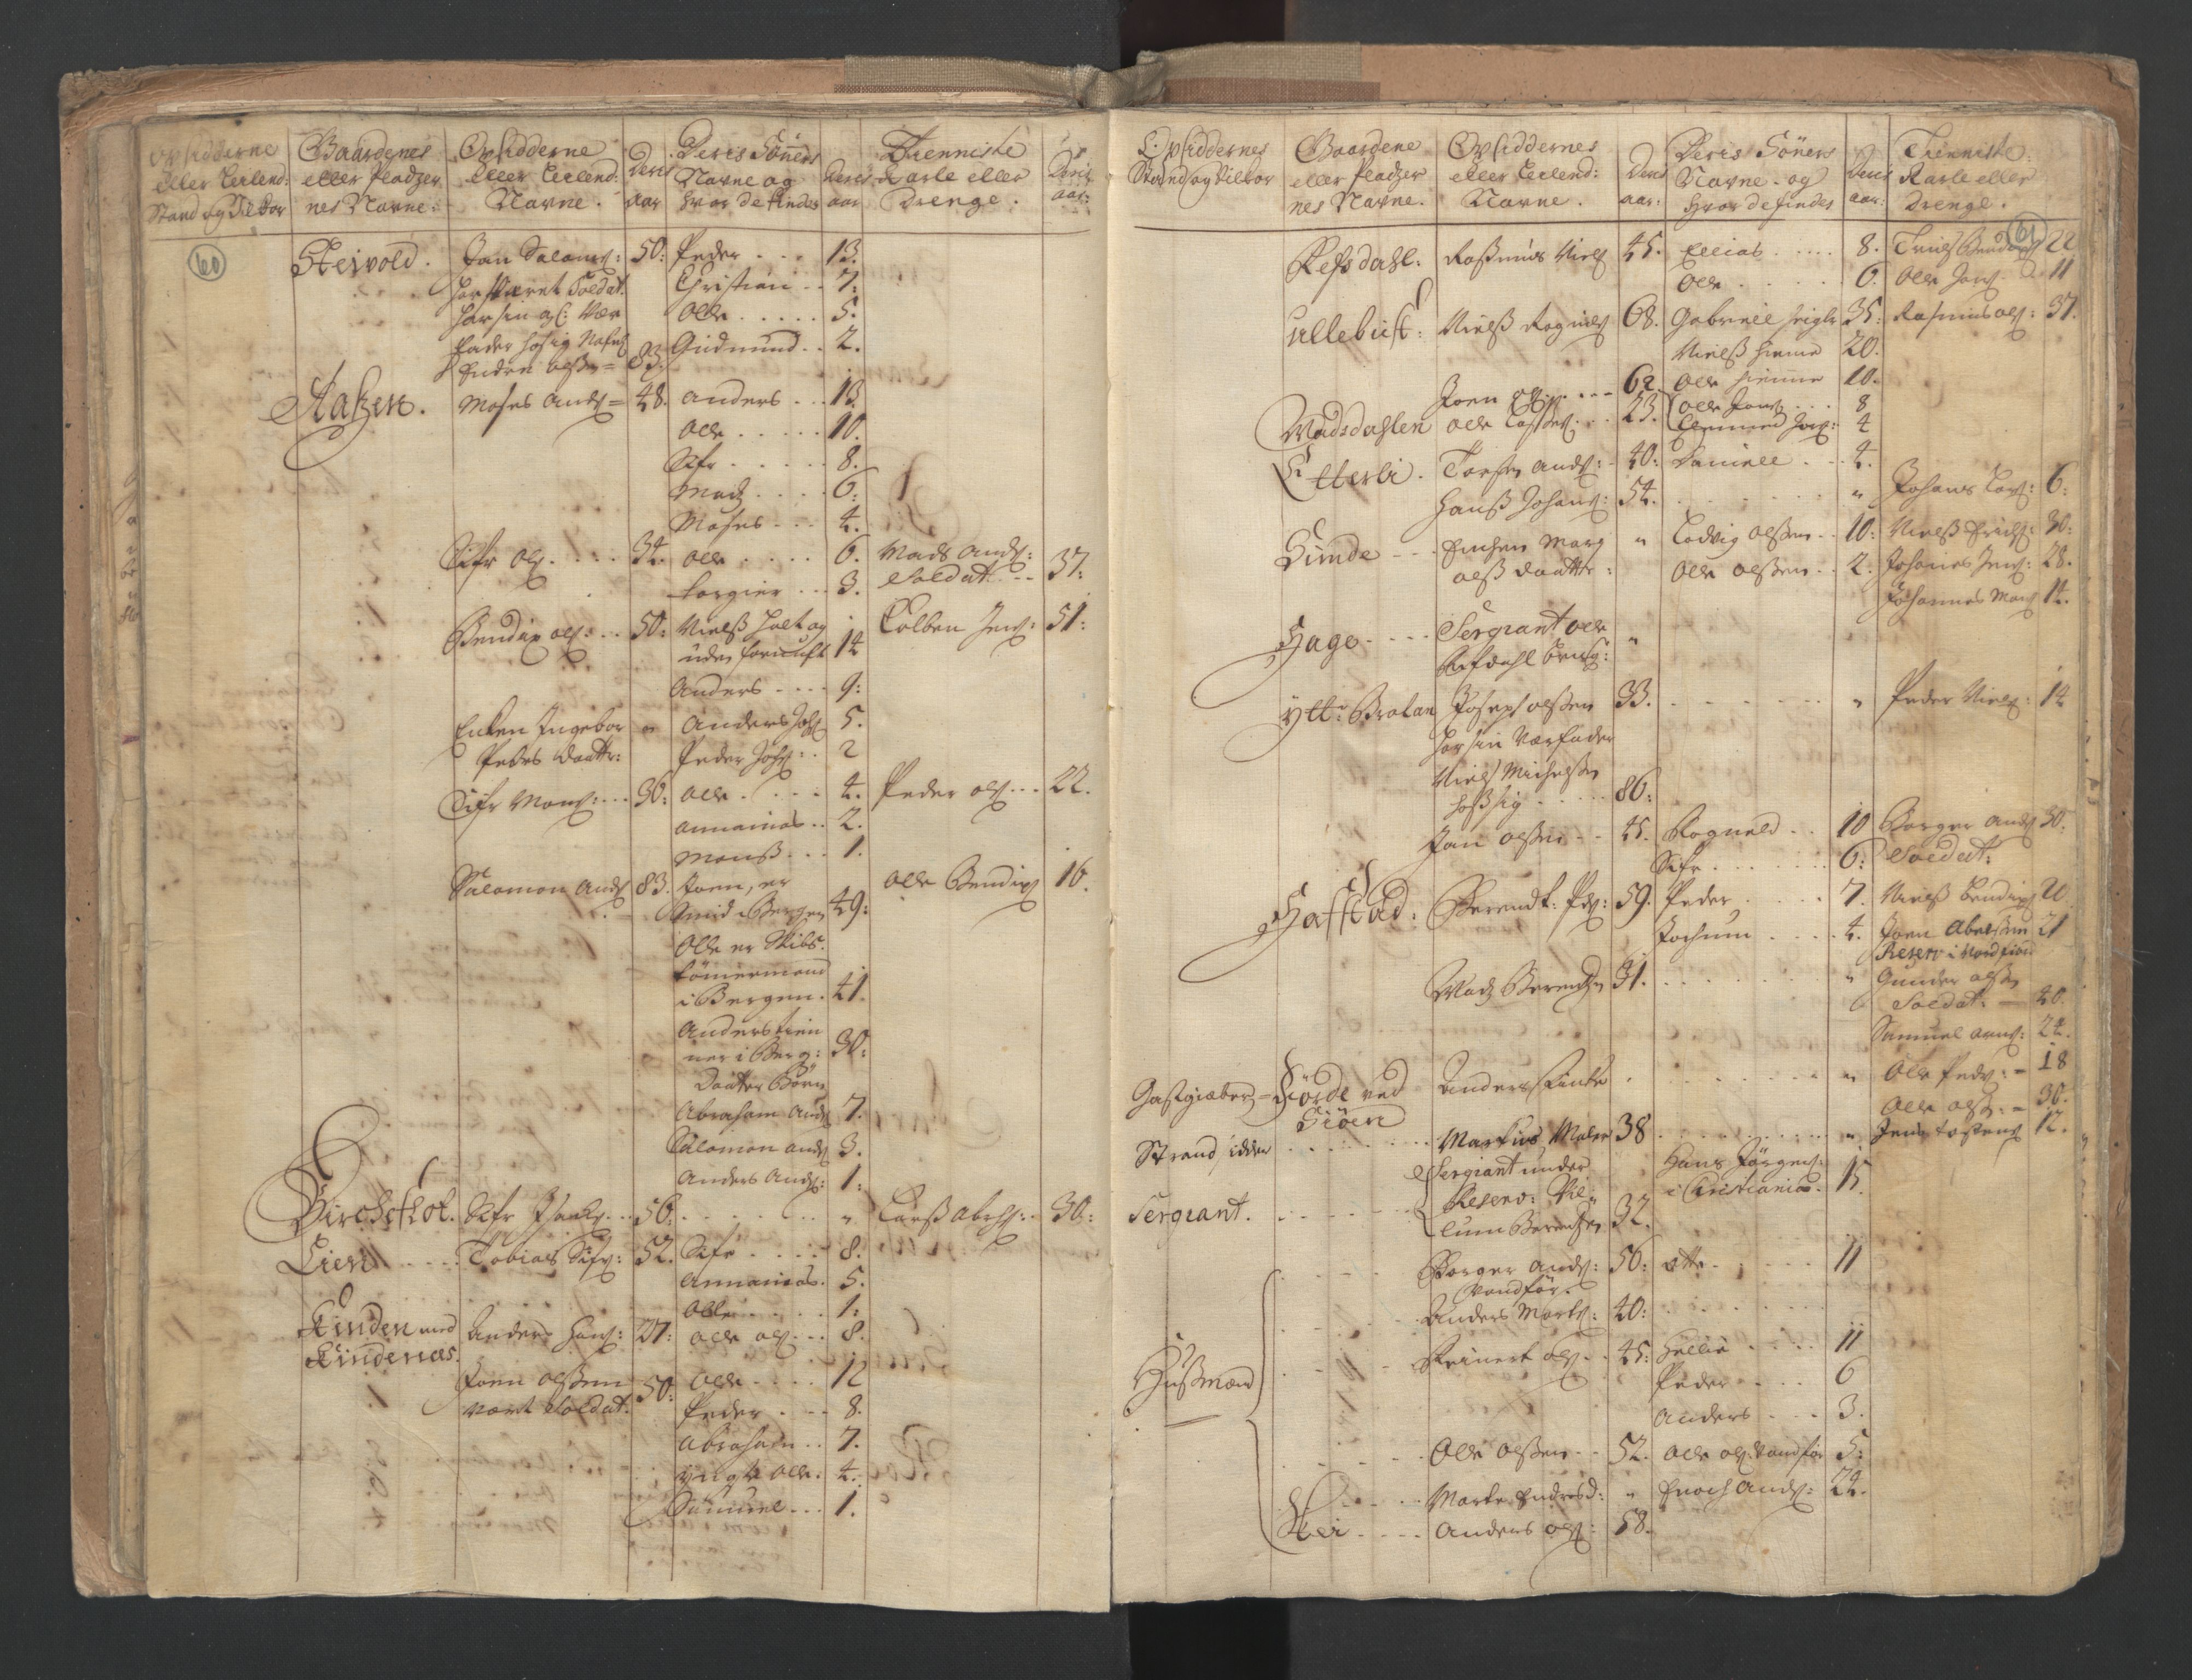 RA, Census (manntall) 1701, no. 9: Sunnfjord fogderi, Nordfjord fogderi and Svanø birk, 1701, p. 60-61